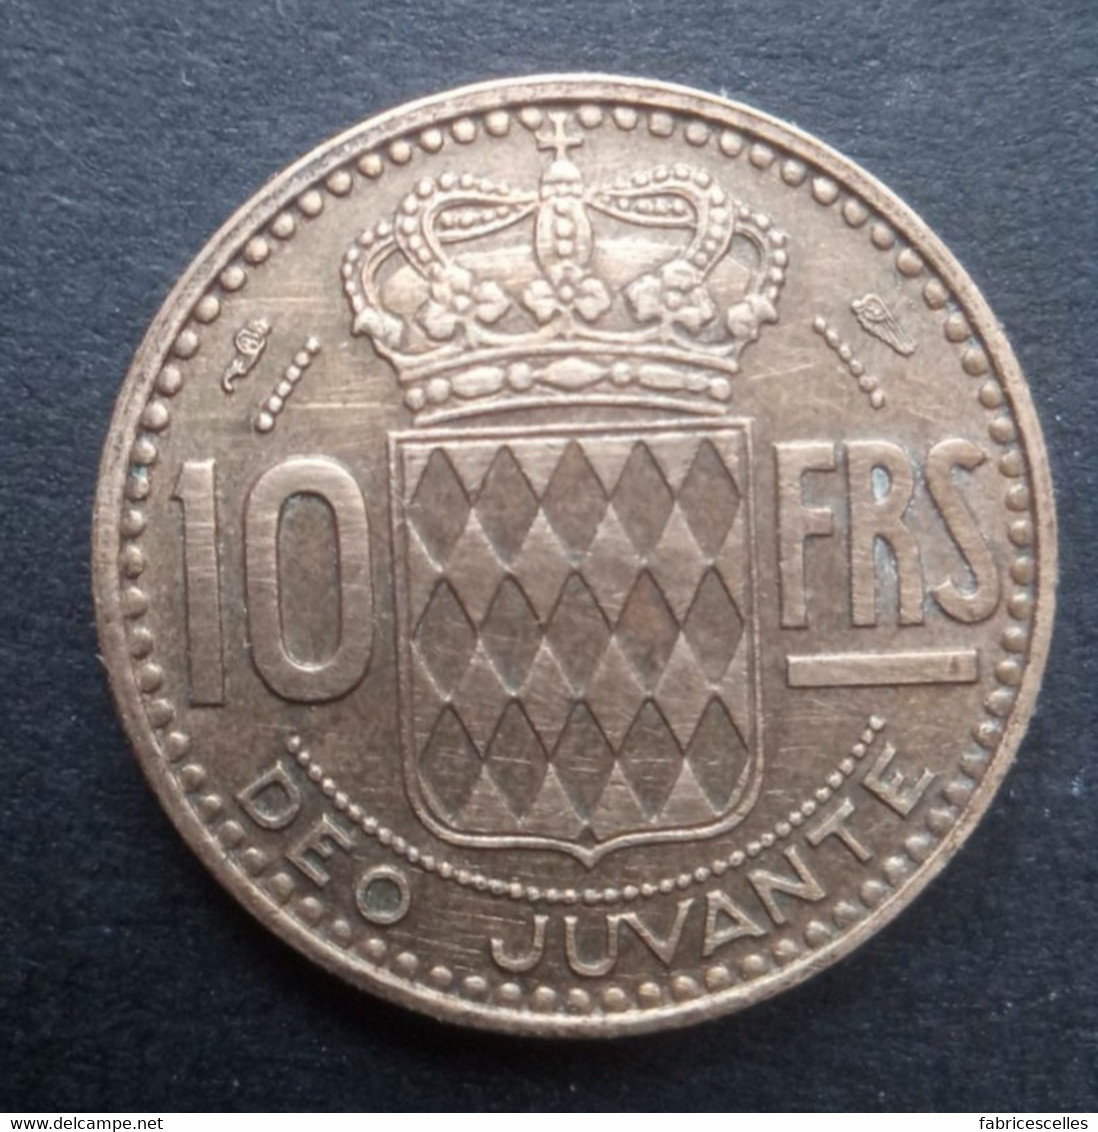 Monaco - Pièce De 10 Francs 1951 - 1949-1956 Franchi Antichi